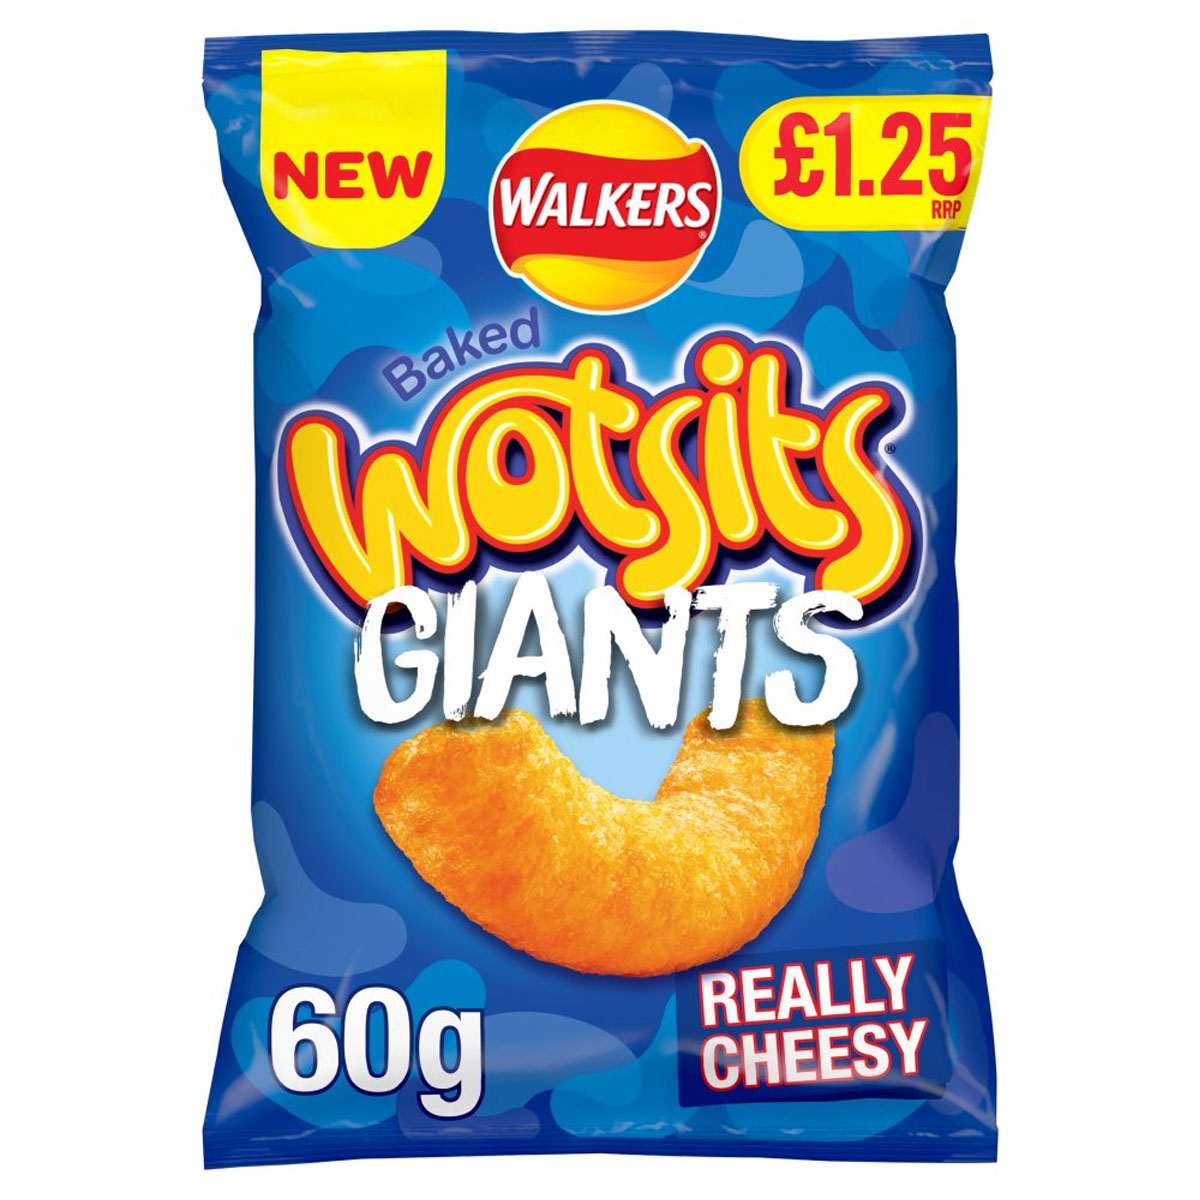 Walkers - Wotsits Giants Really Cheesy - 60g are really cheesy.